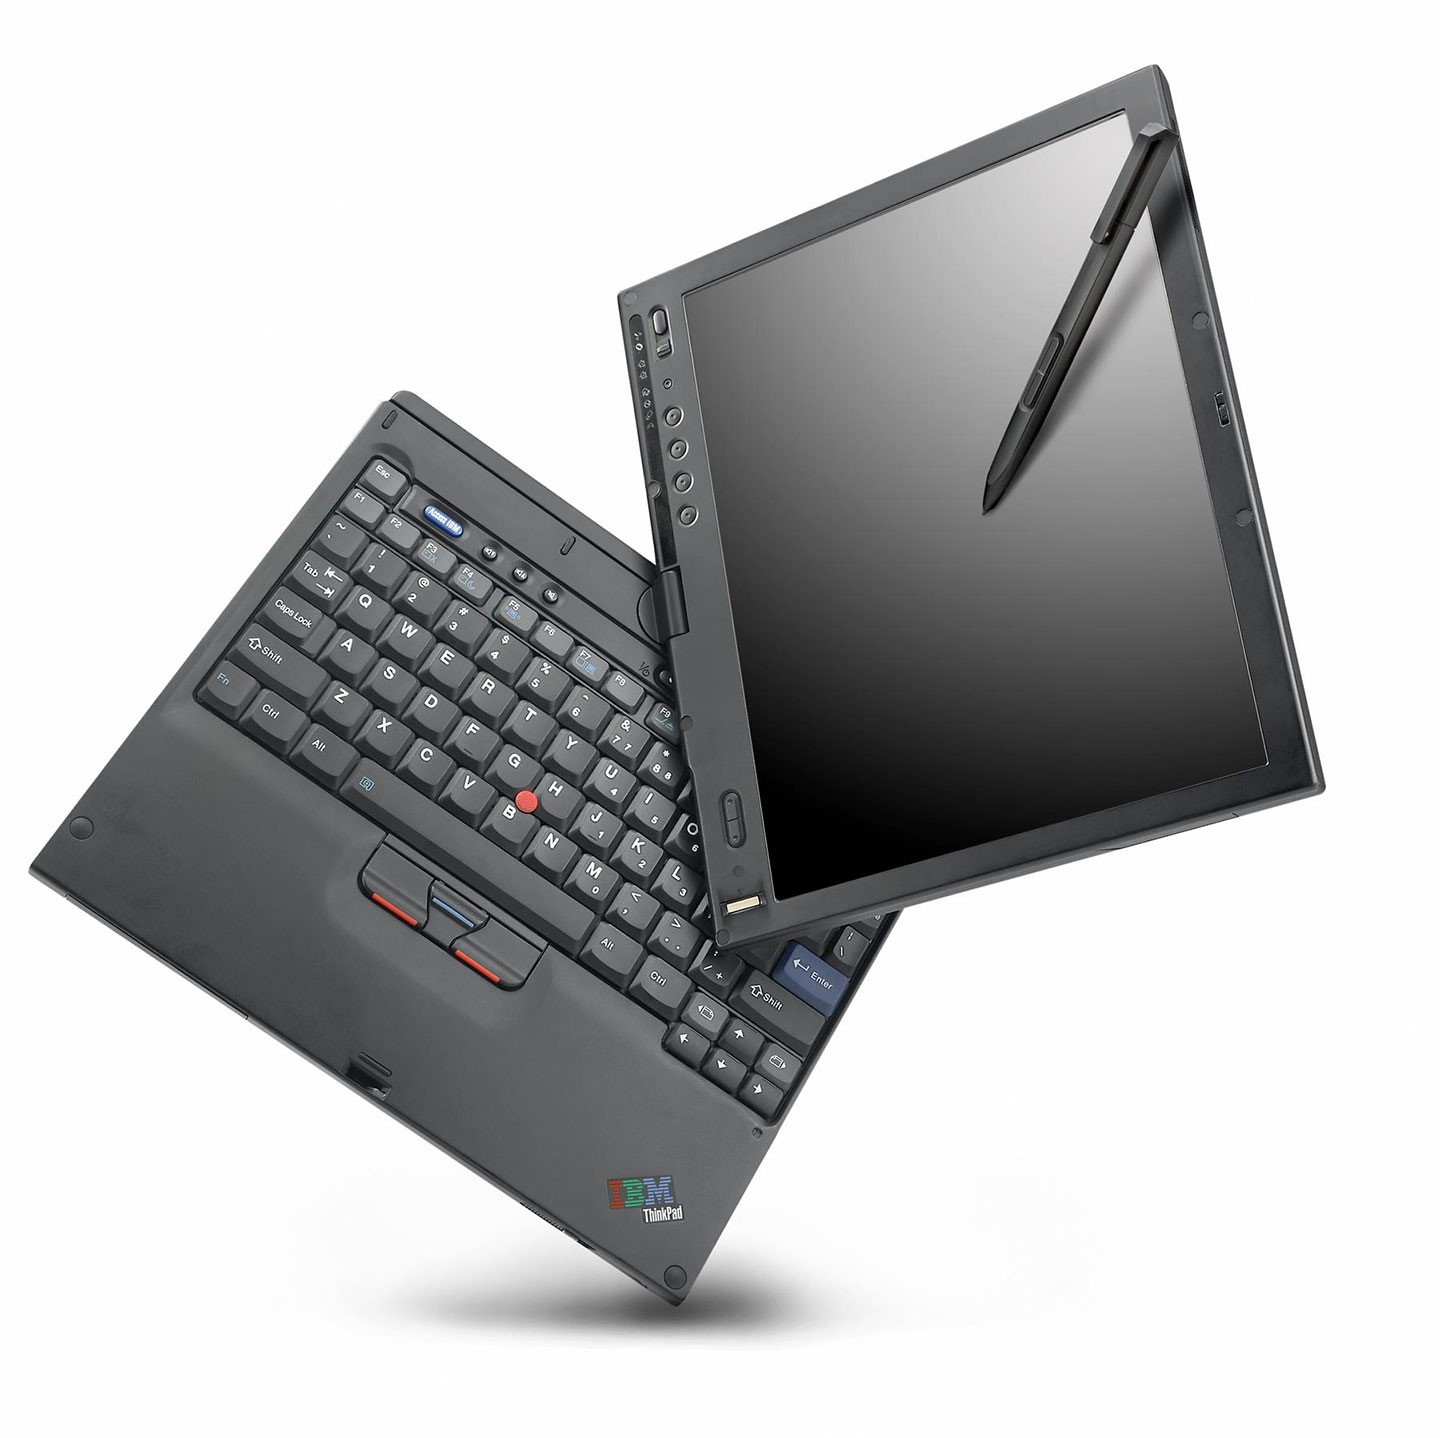 採用可旋轉螢幕計的 ThinkPad X41 Tablet，可從電形式轉換為平板。